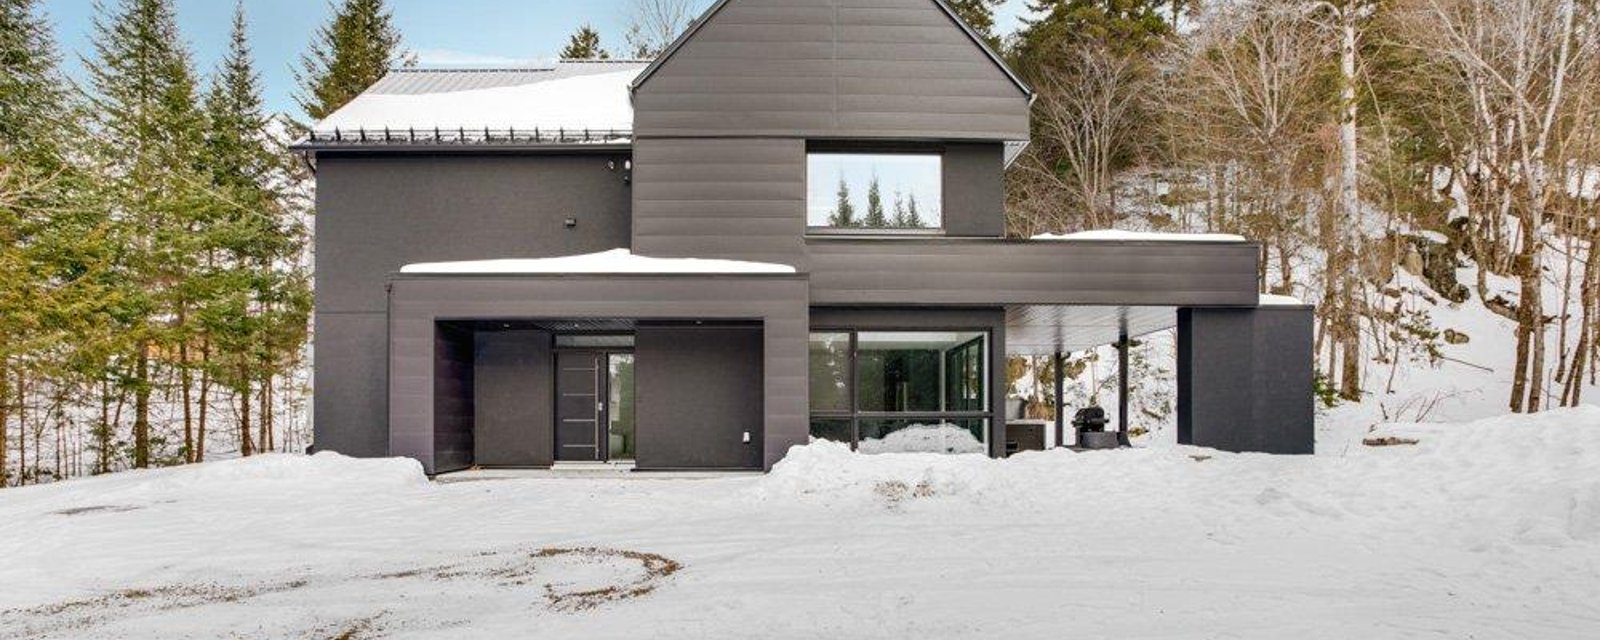 Sublime maison d'inspiration scandinave nichée en toute intimité au milieu de la forêt